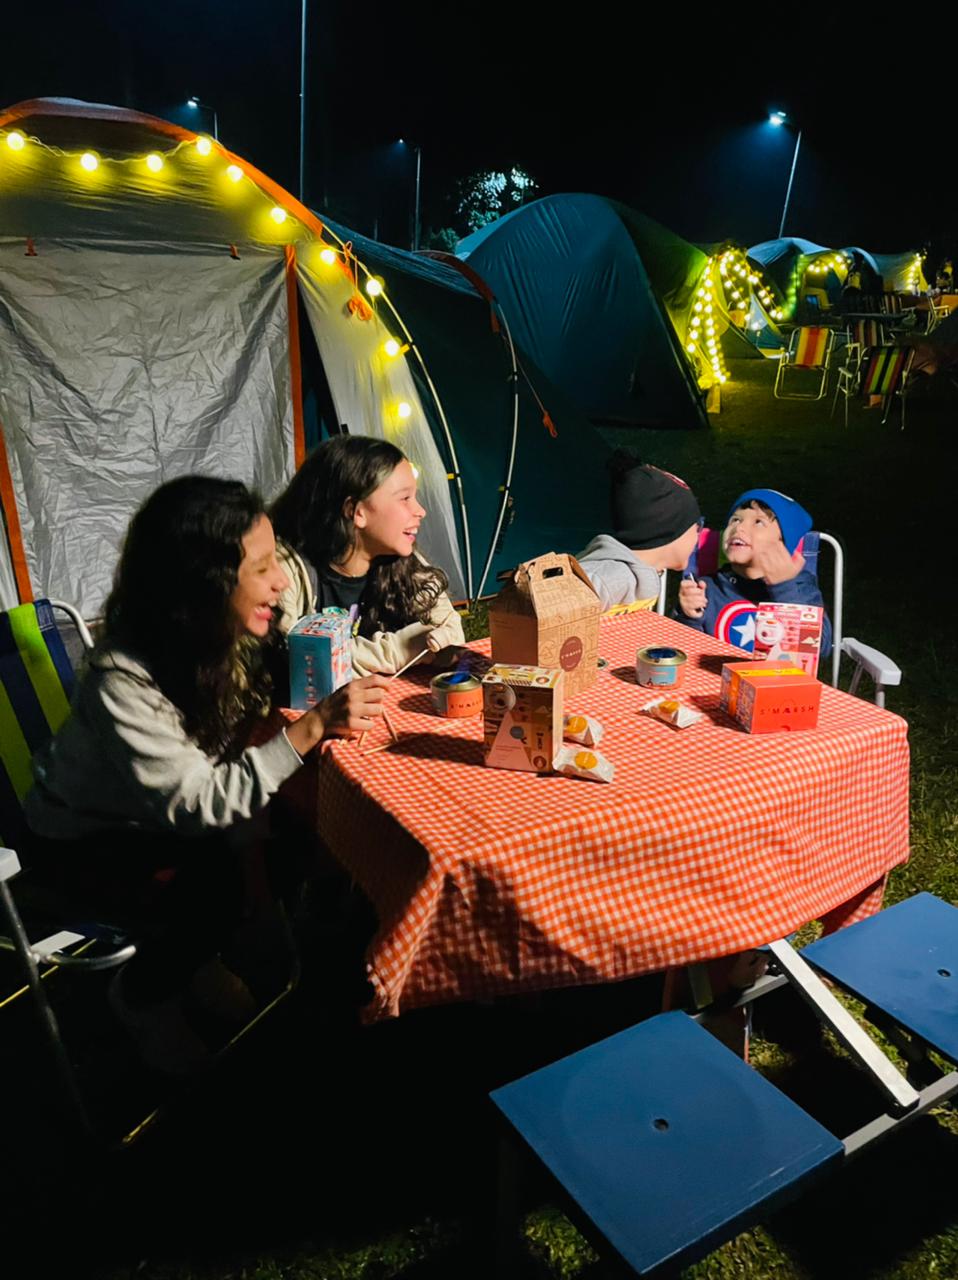 Crianças sentadas em uma mesa de piquenique jantando. Elas estão acampando no Parque Burle Marx à noite e sorriem